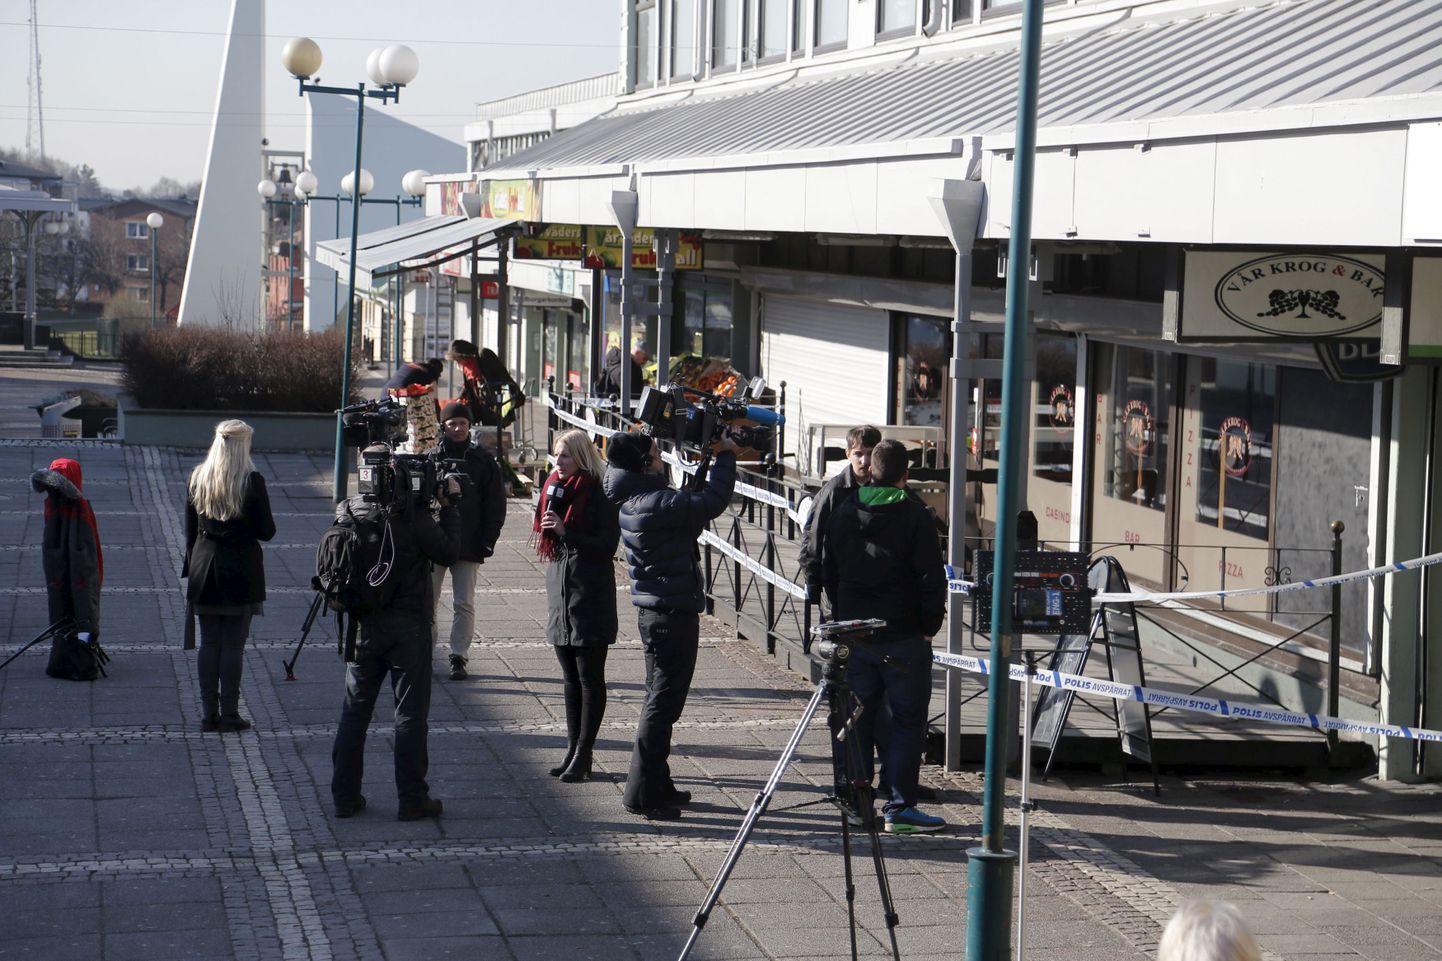 Ajakirjanikud baari ees, kus tulistamine toimus.